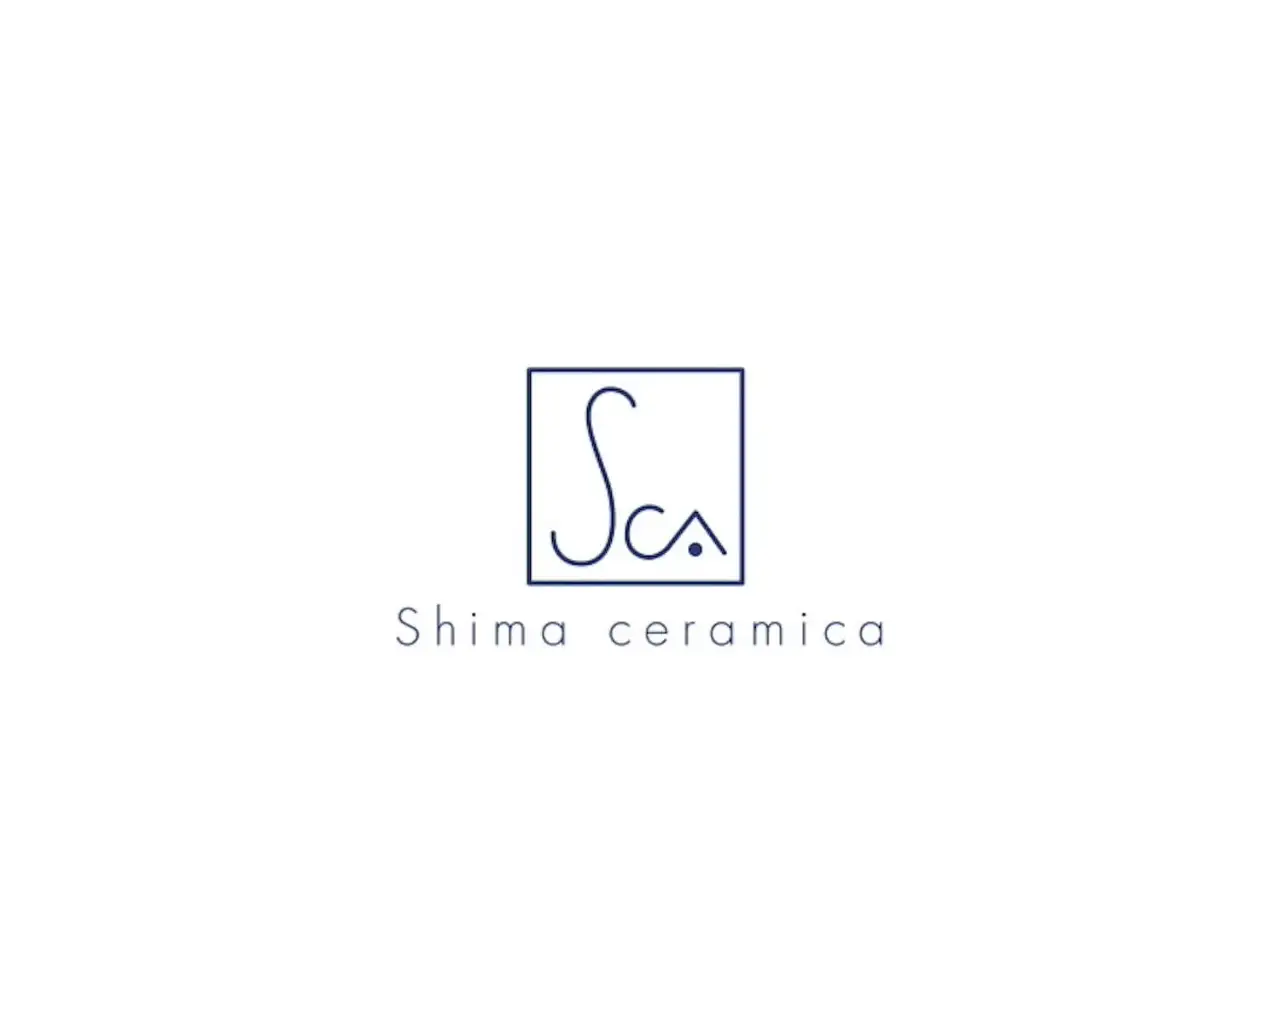 Shima ceramica site